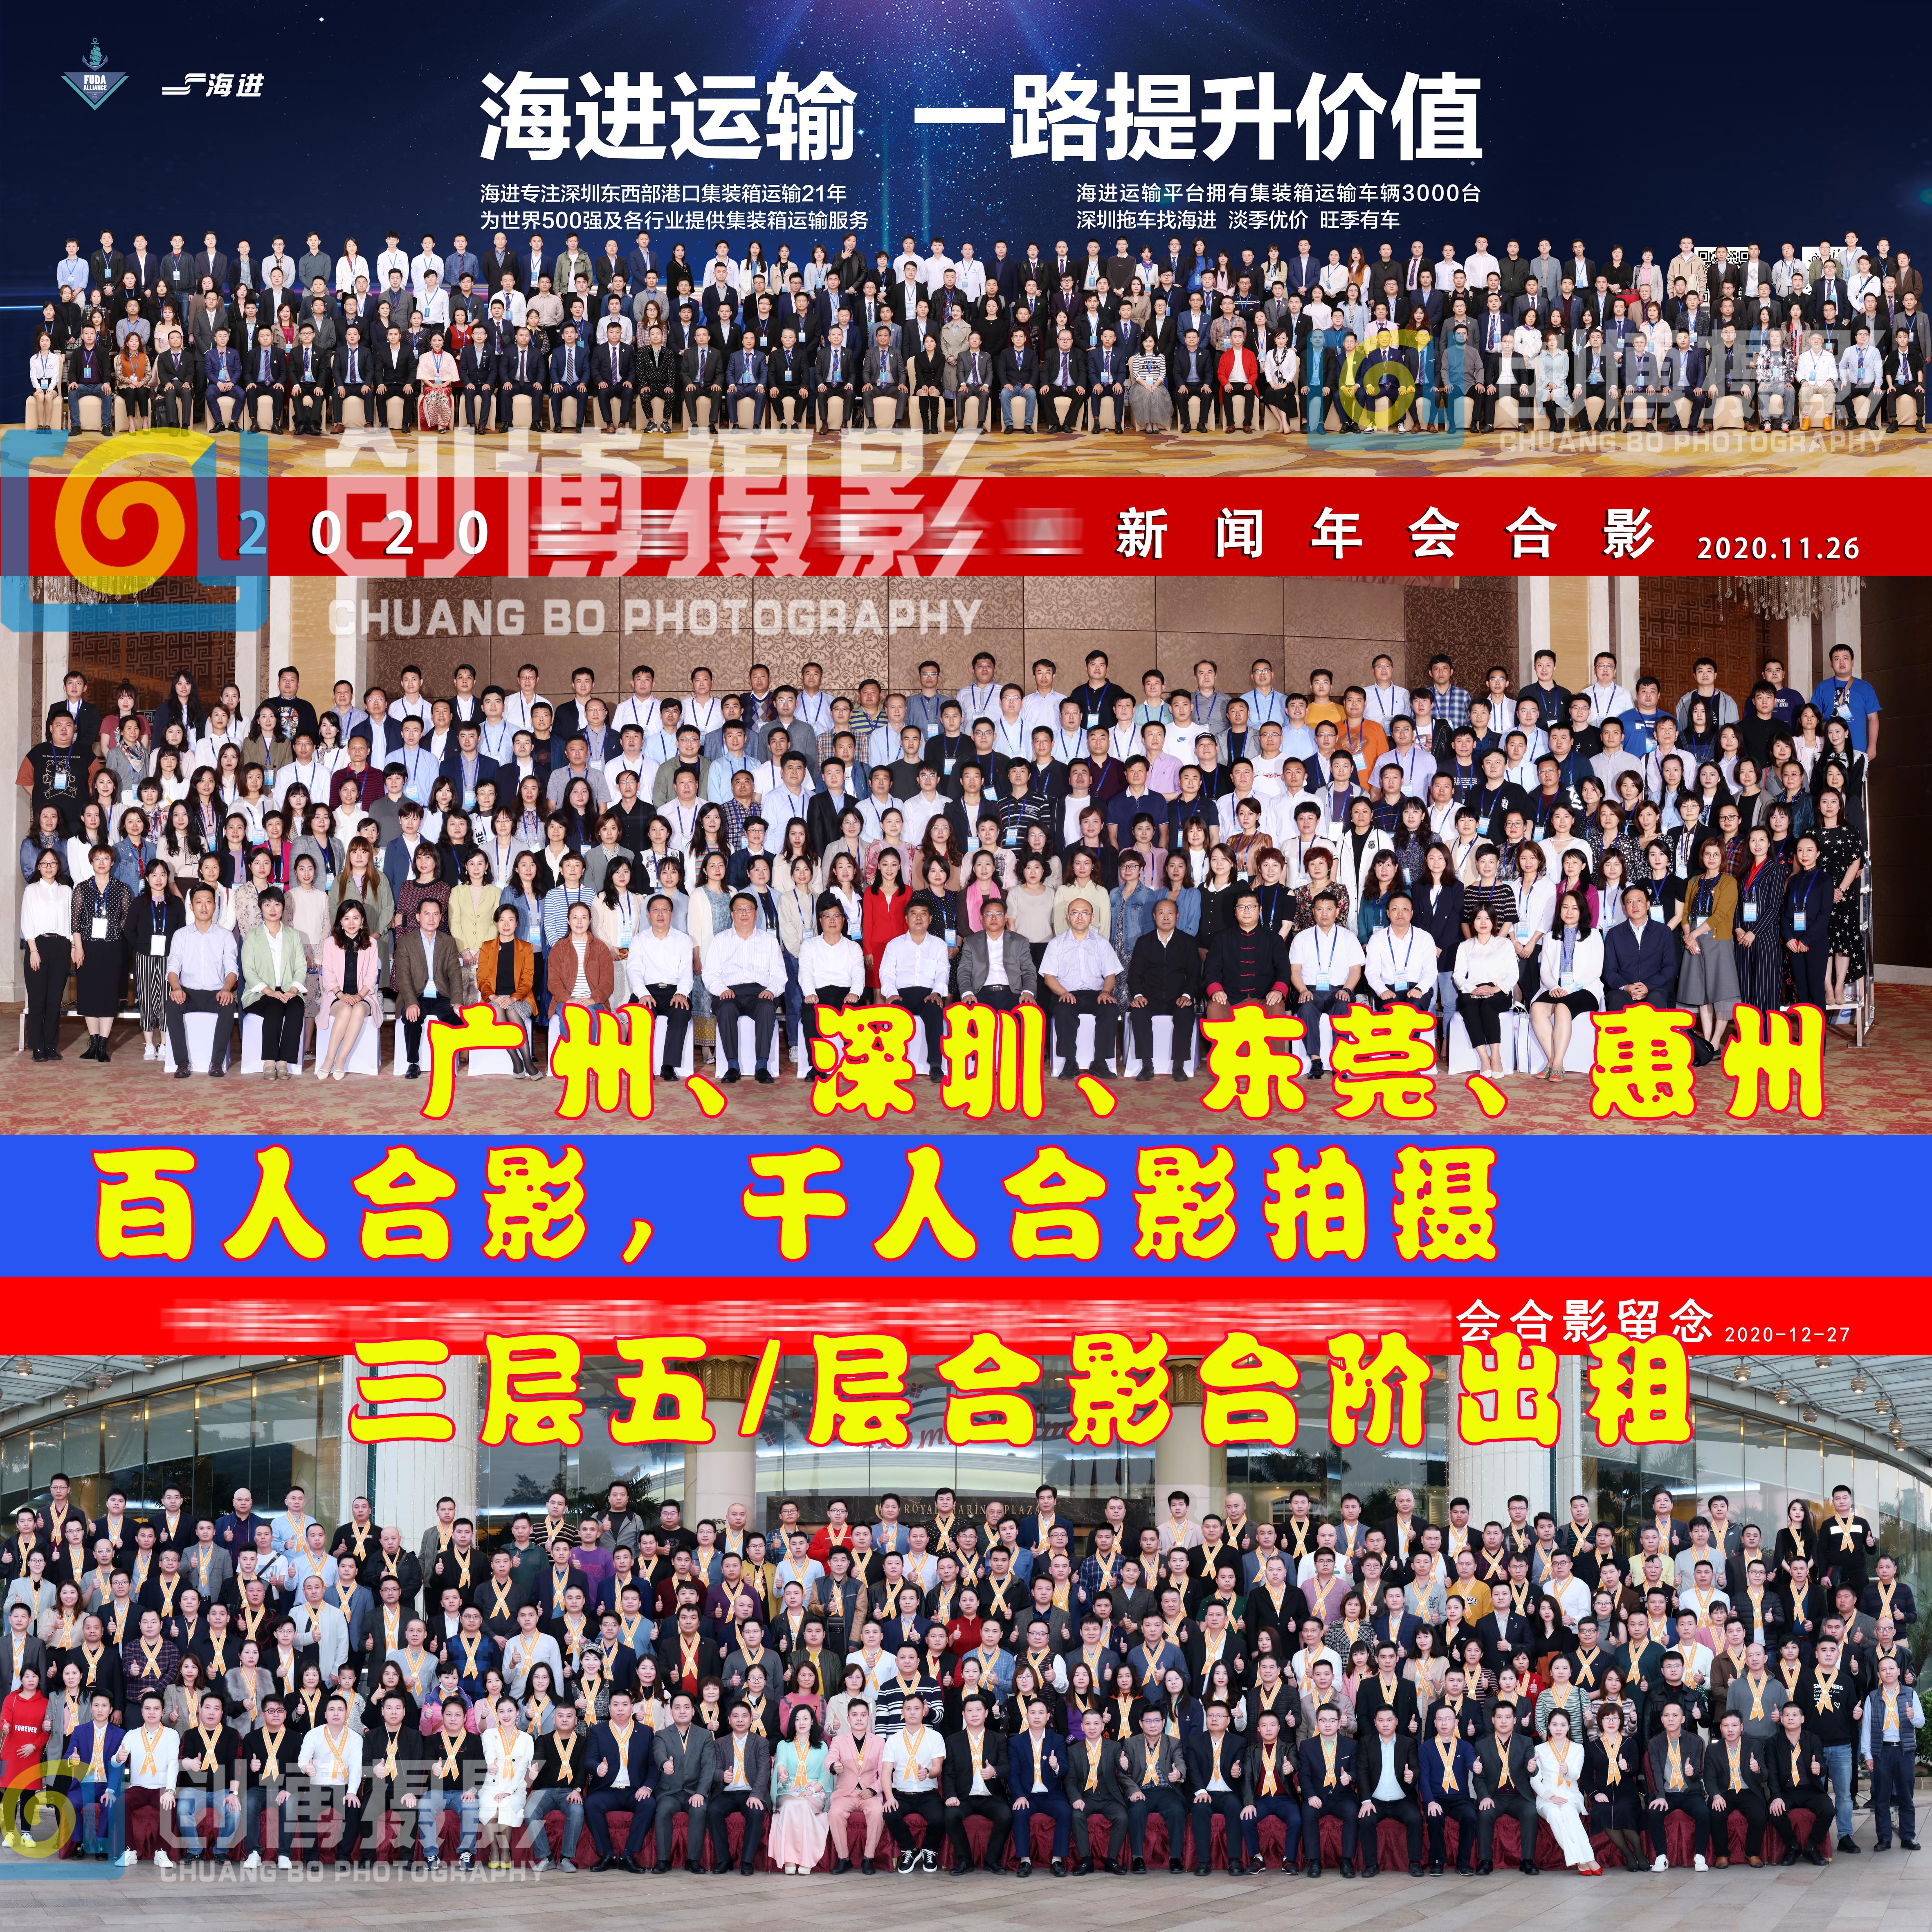 广州商会200人会议照拍摄200人集体照拍摄架子台阶出租